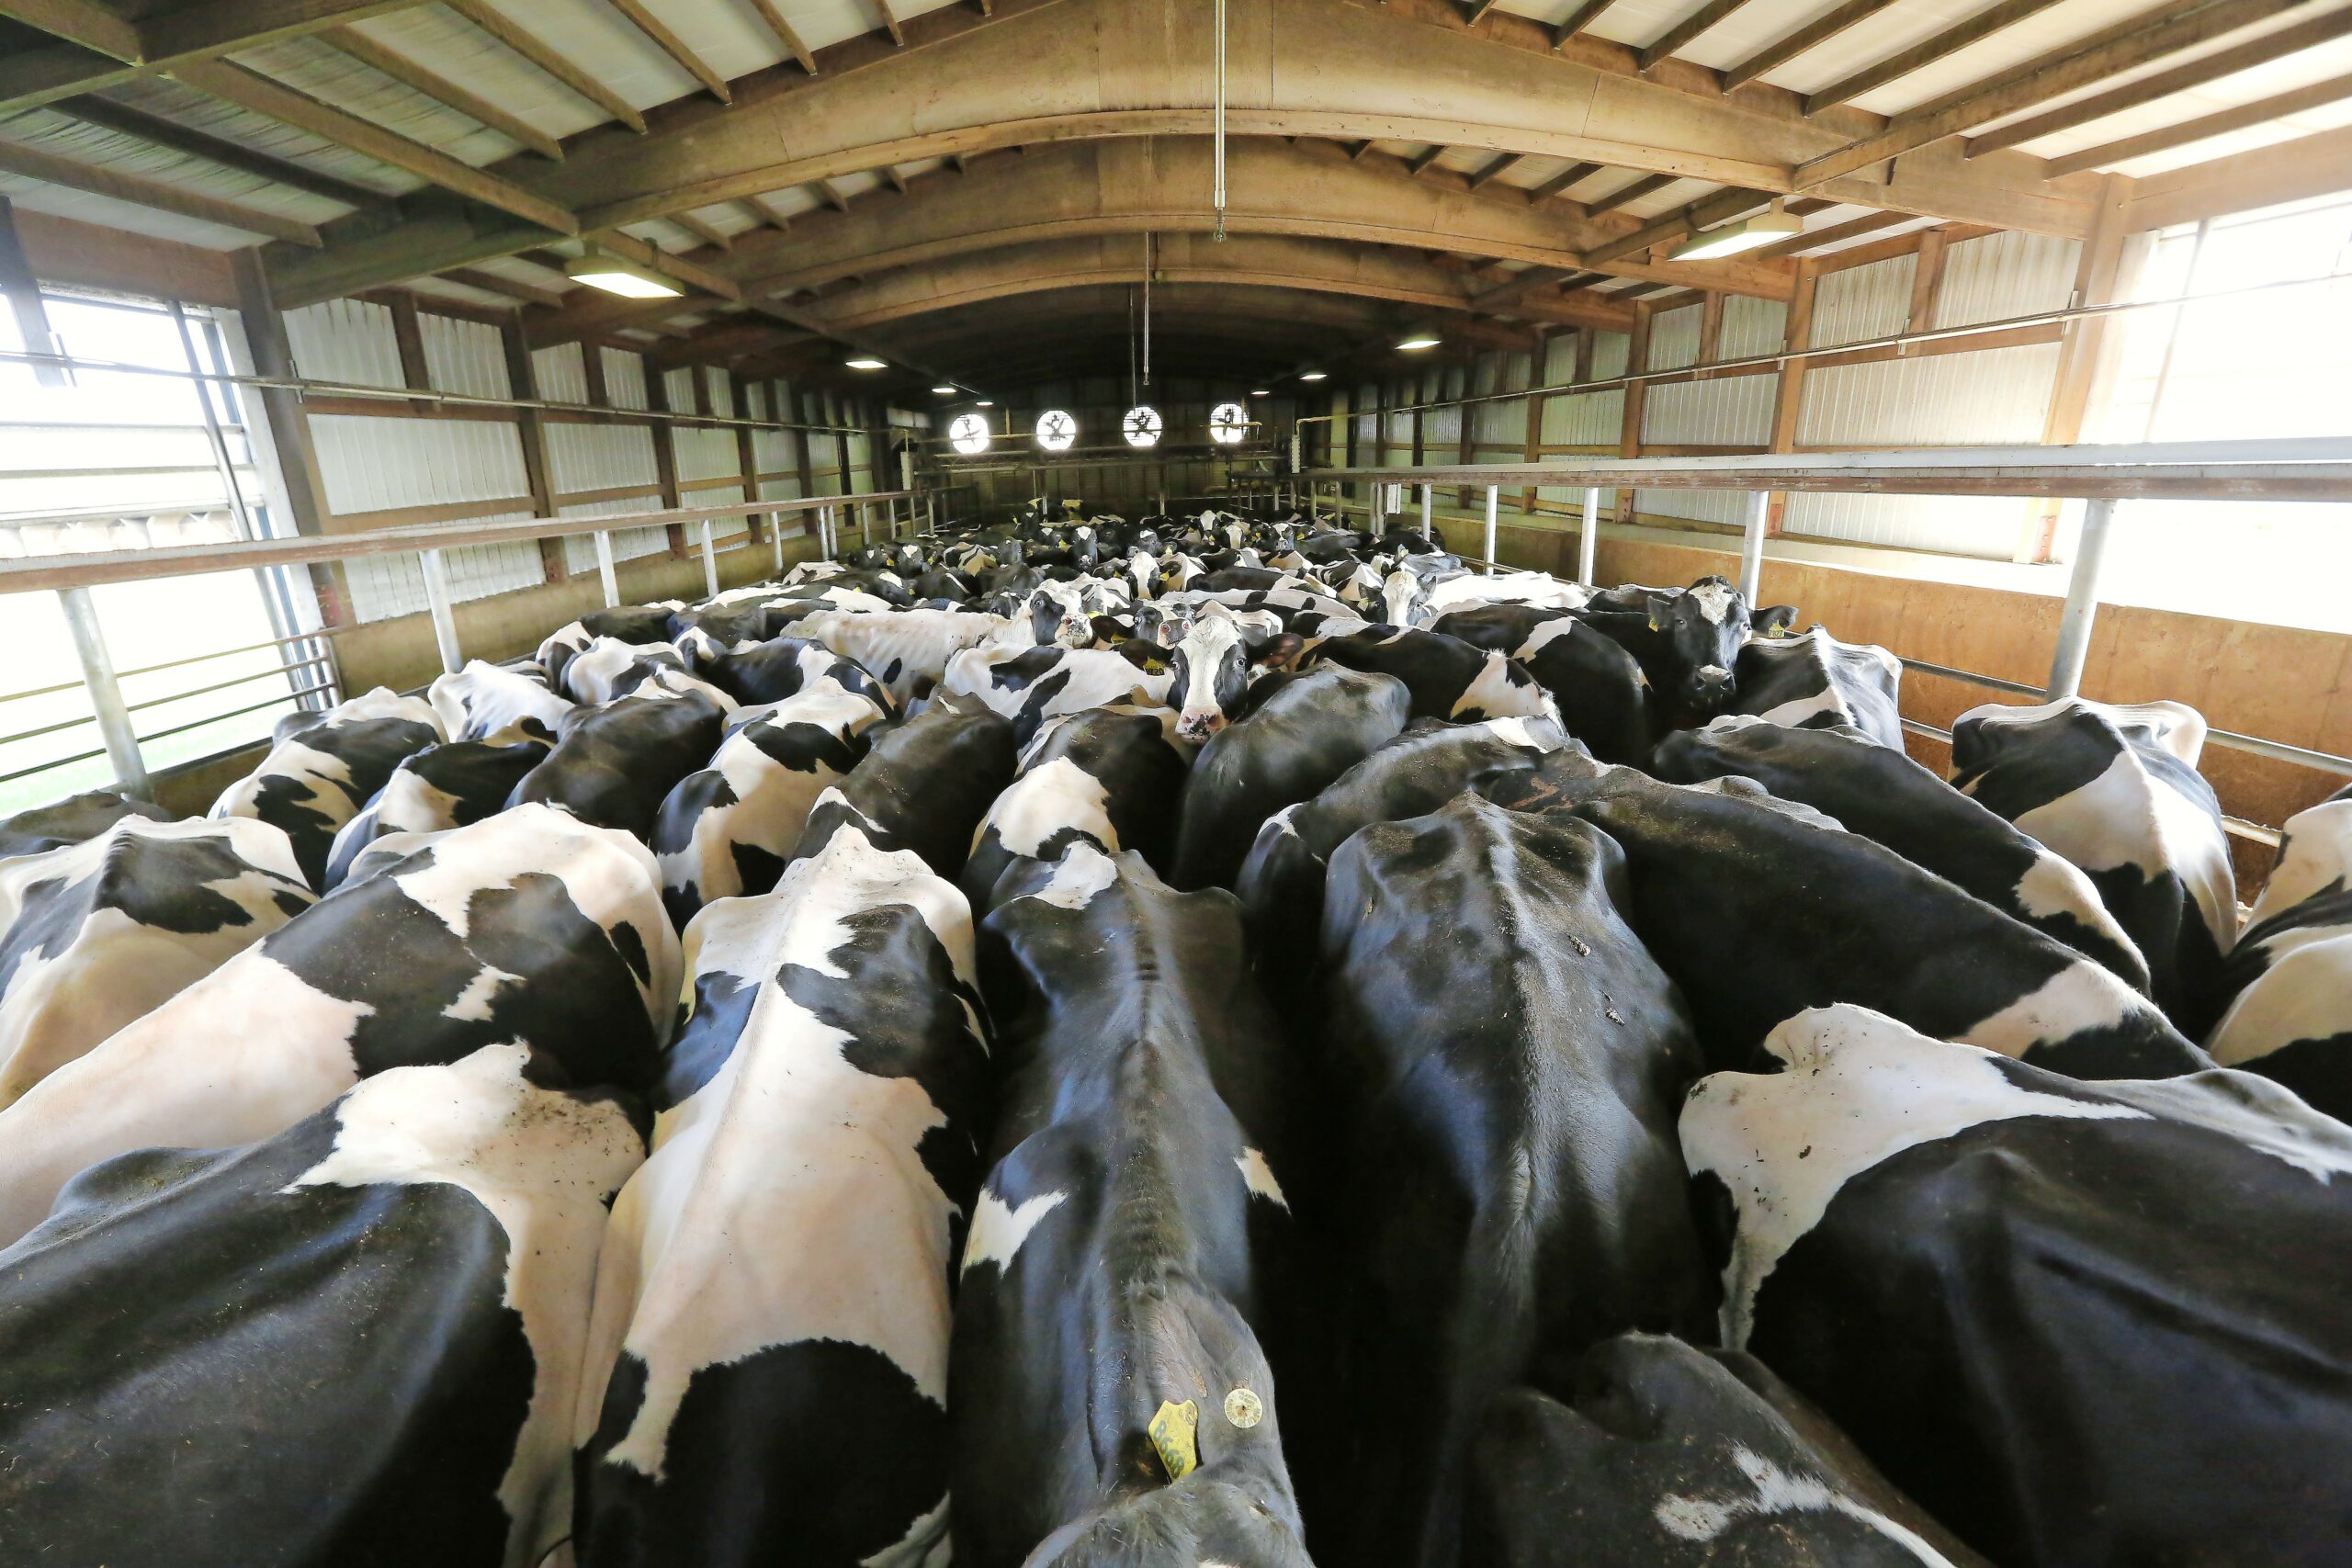 Wachtruimte op een groot melkveebedrijf in Wisconsin, de staat die zich graag profileert als America's Dairyland.